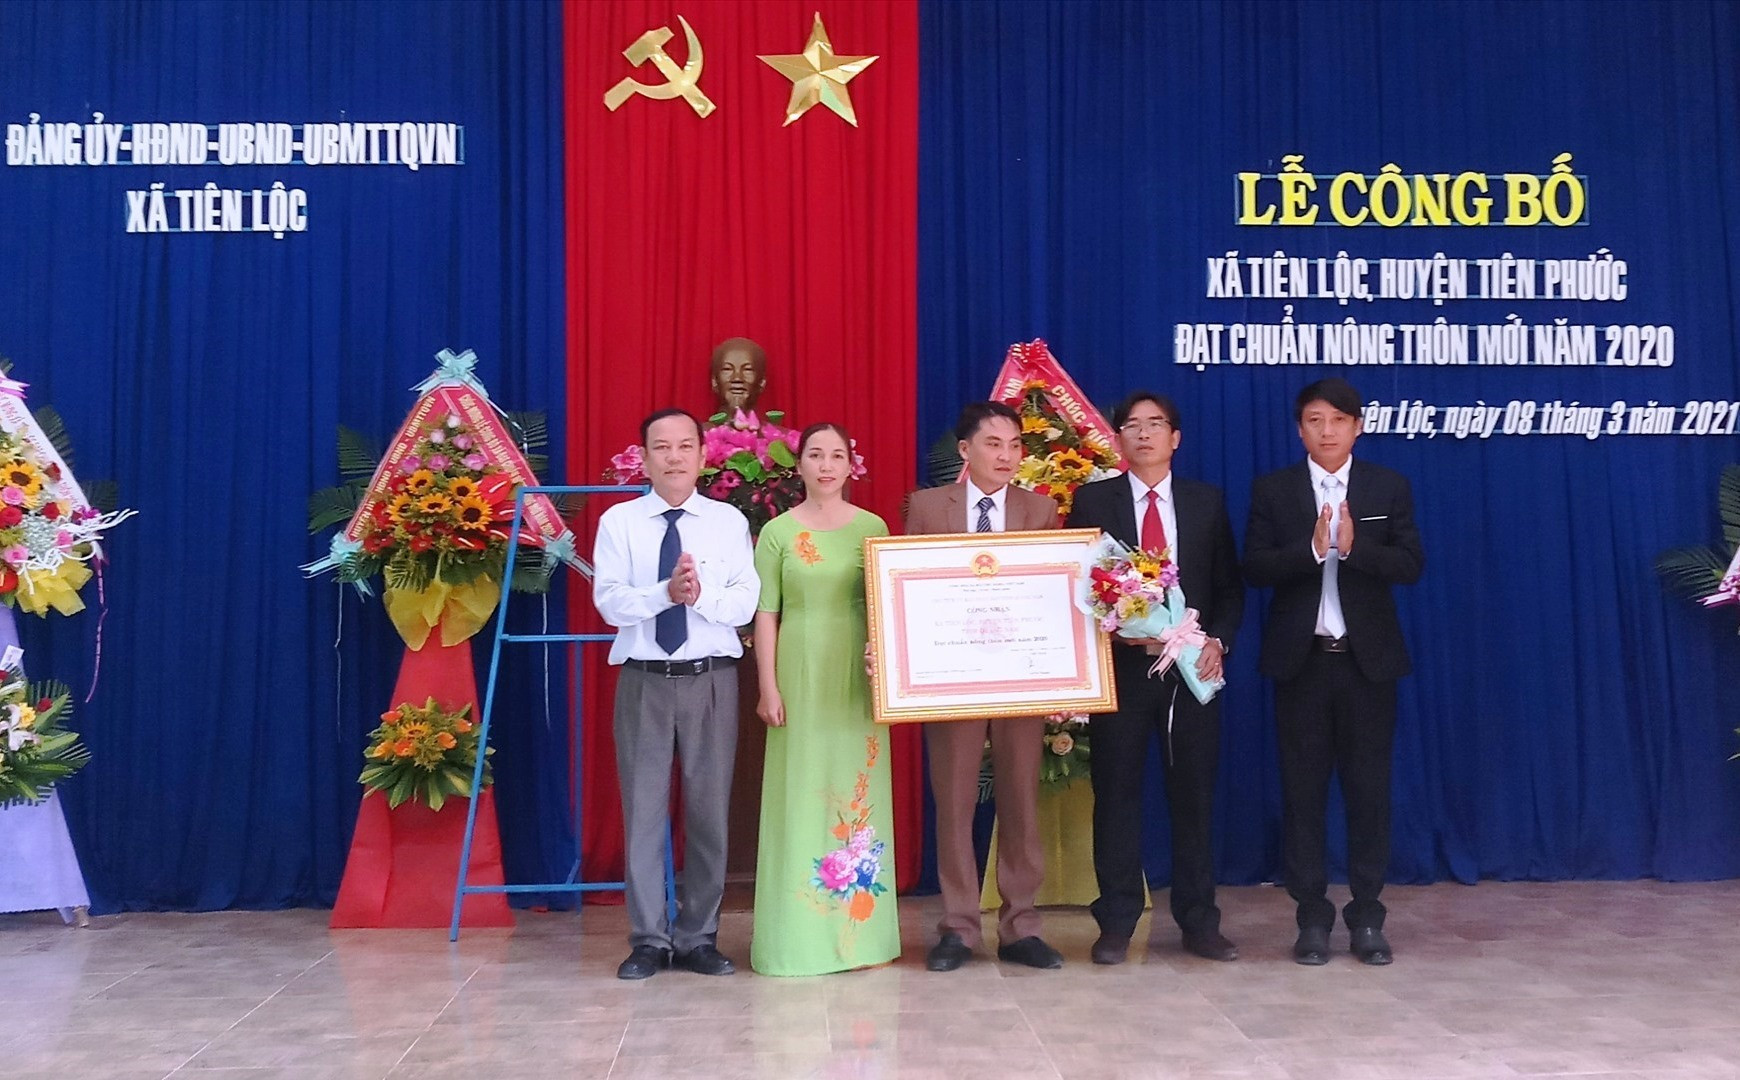 Lãnh đạo Văn phòng Điều phối NTM tỉnh, UBND huyện Tiên Phước đã trao Bằng công nhận đạt chuẩn NTM năm 2020 cho xã Tiên Lộc